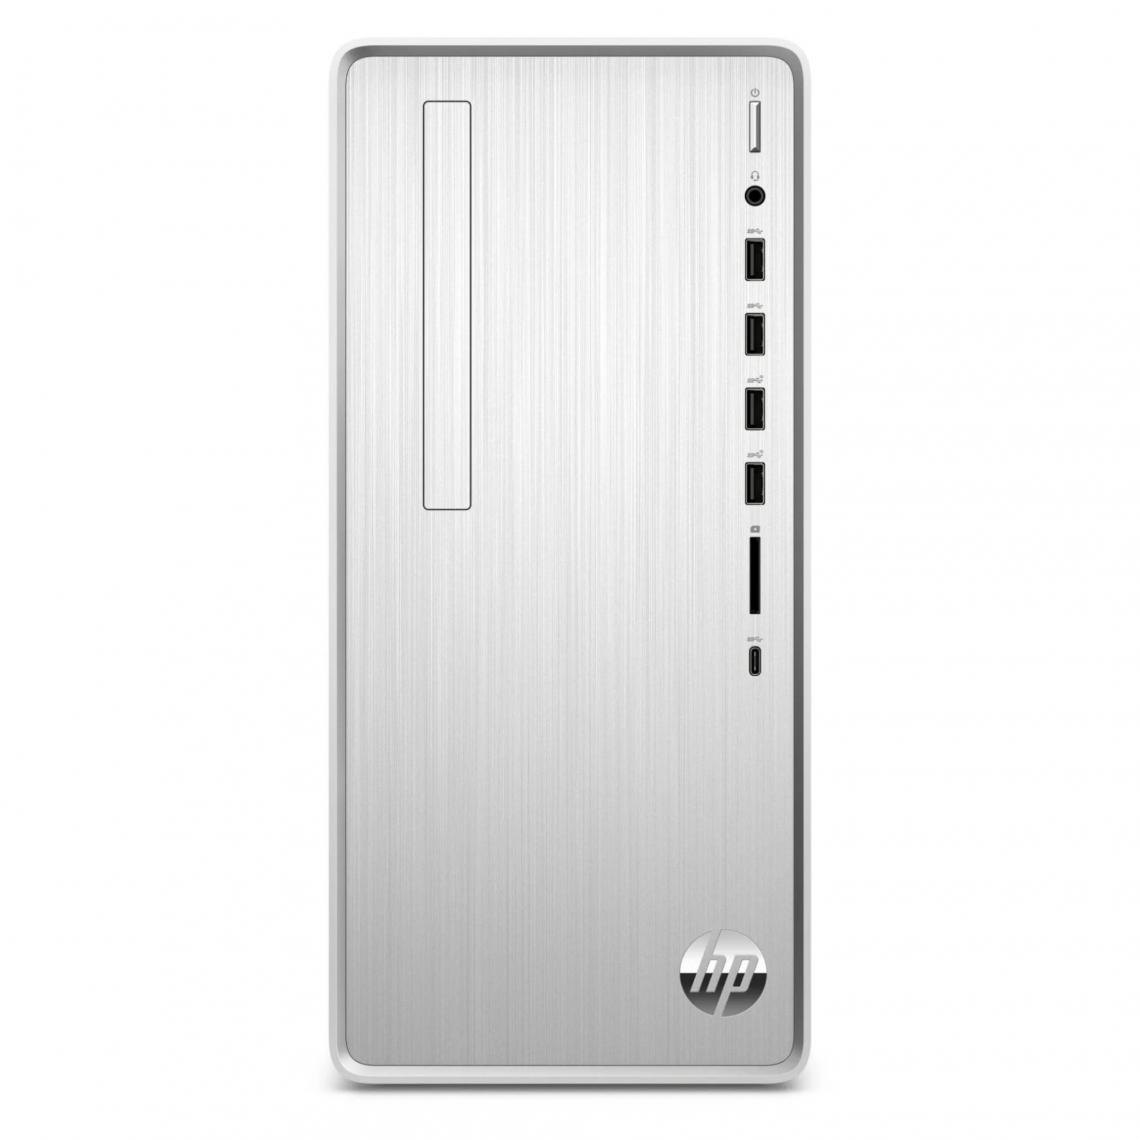 Hewlett Packard - Unité centrale PC HP Pavilion TP01-1081nf Silver - PC Fixe